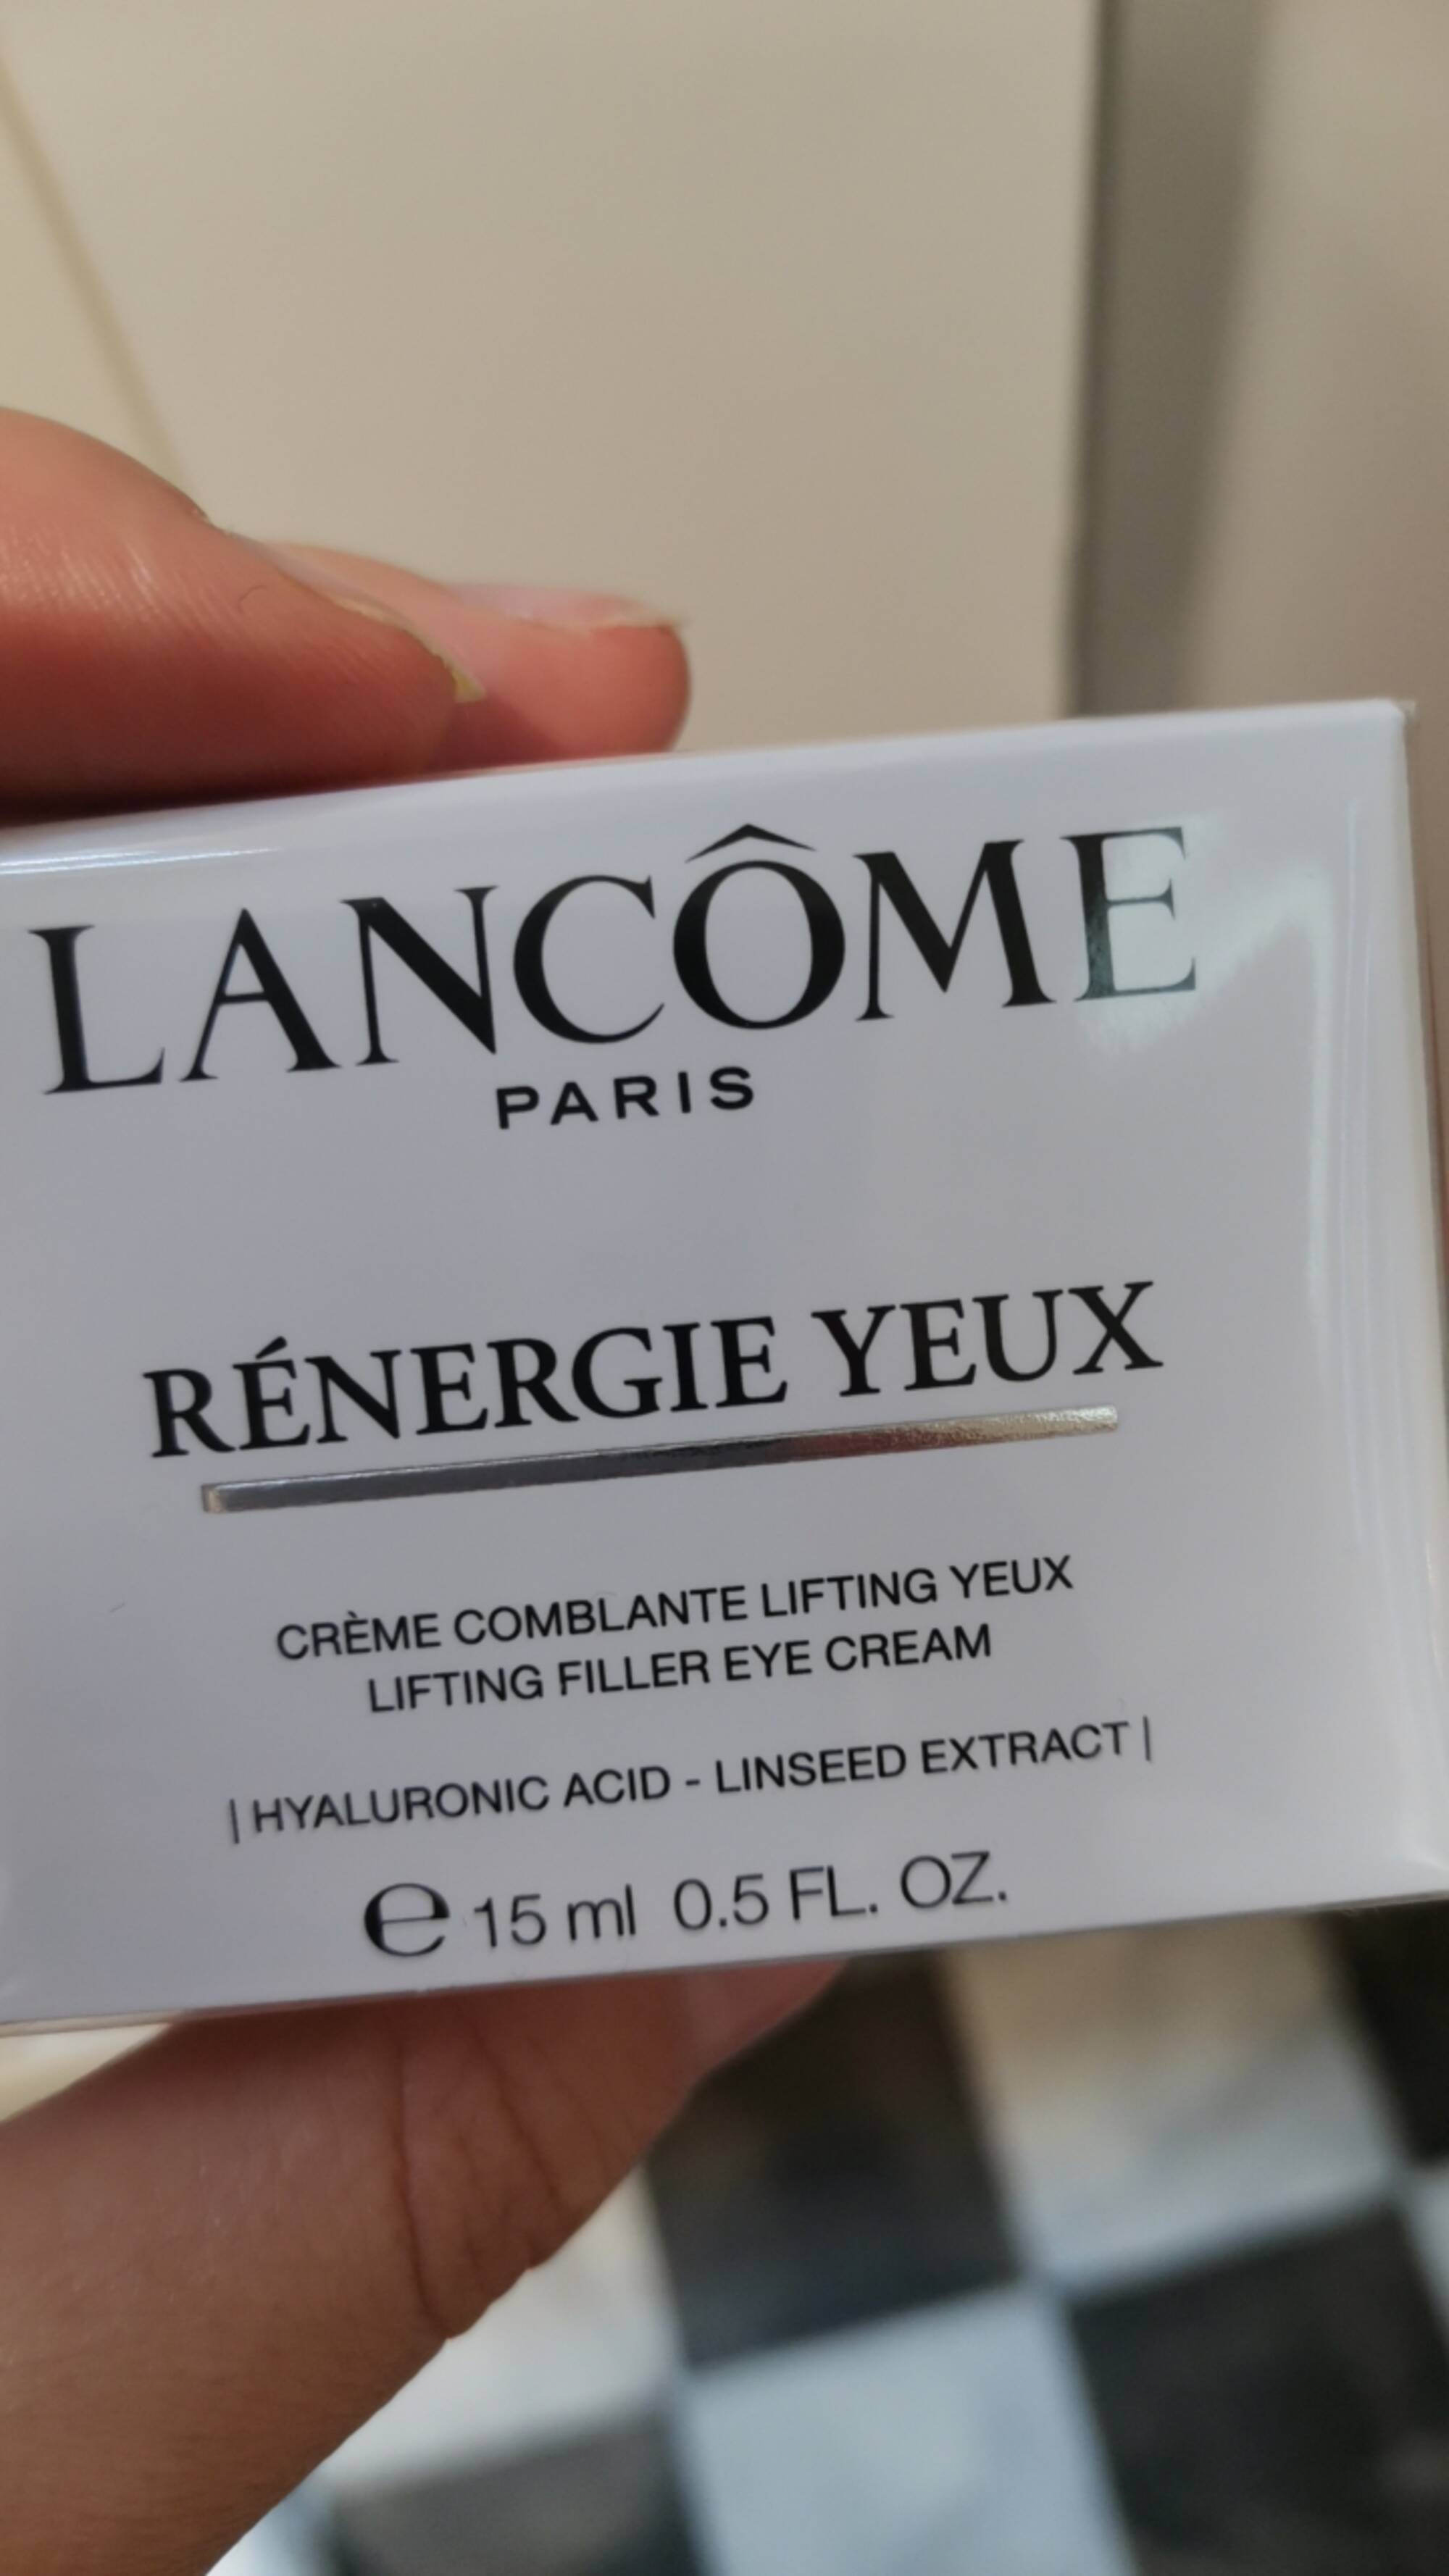 LANCÔME PARIS - Rénergie yeux_crème comblante lifting yeux